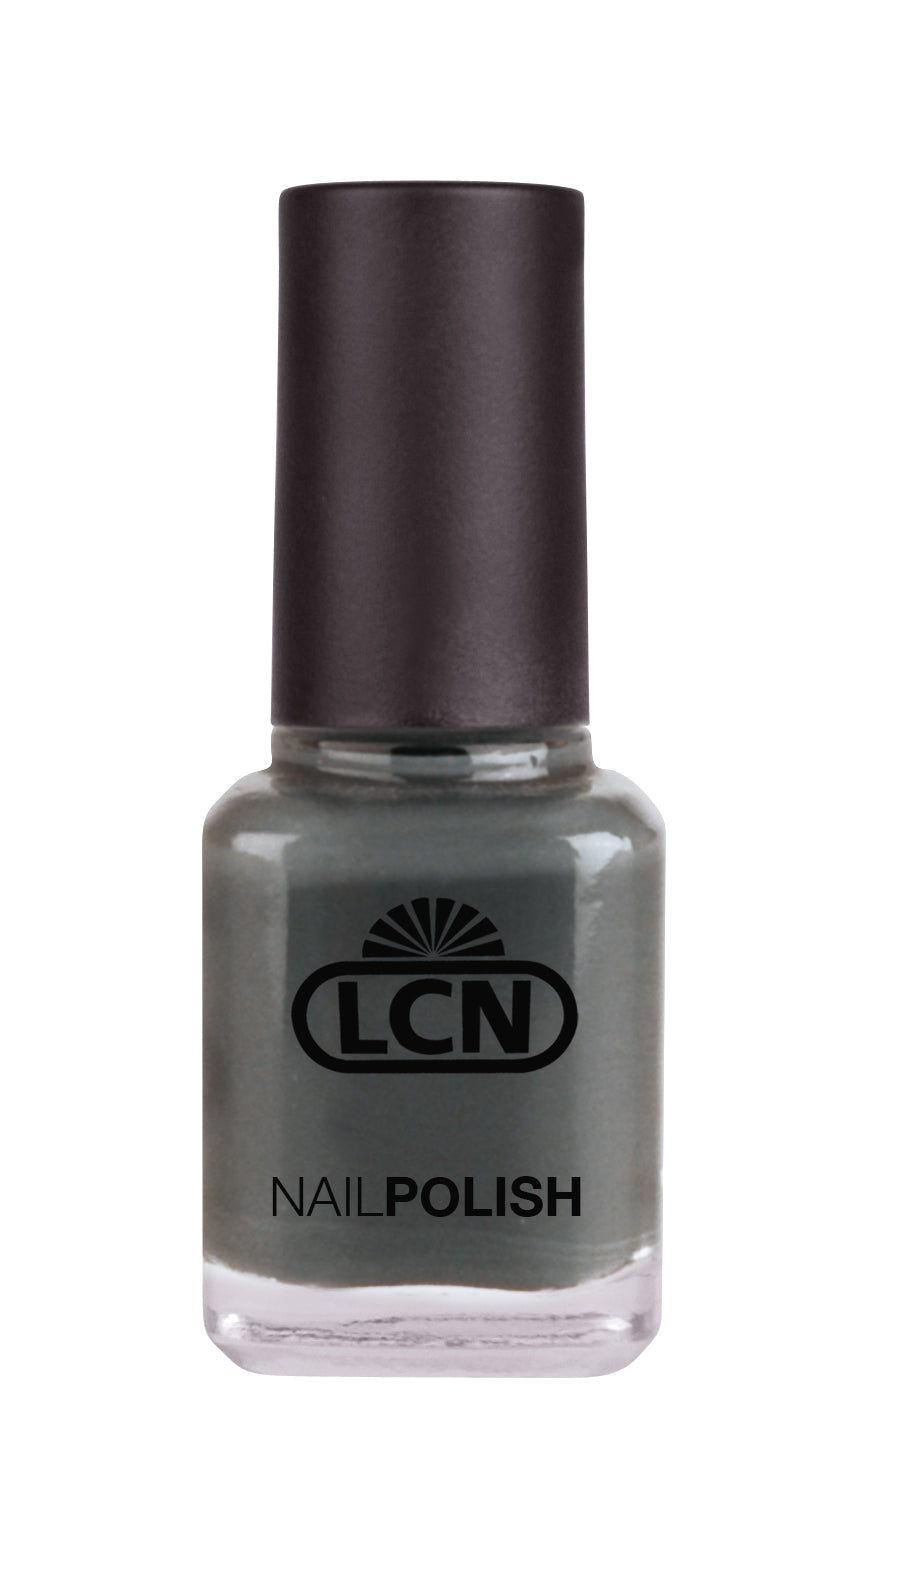 LCN Nail Polish, 340 New York glam, 8ml